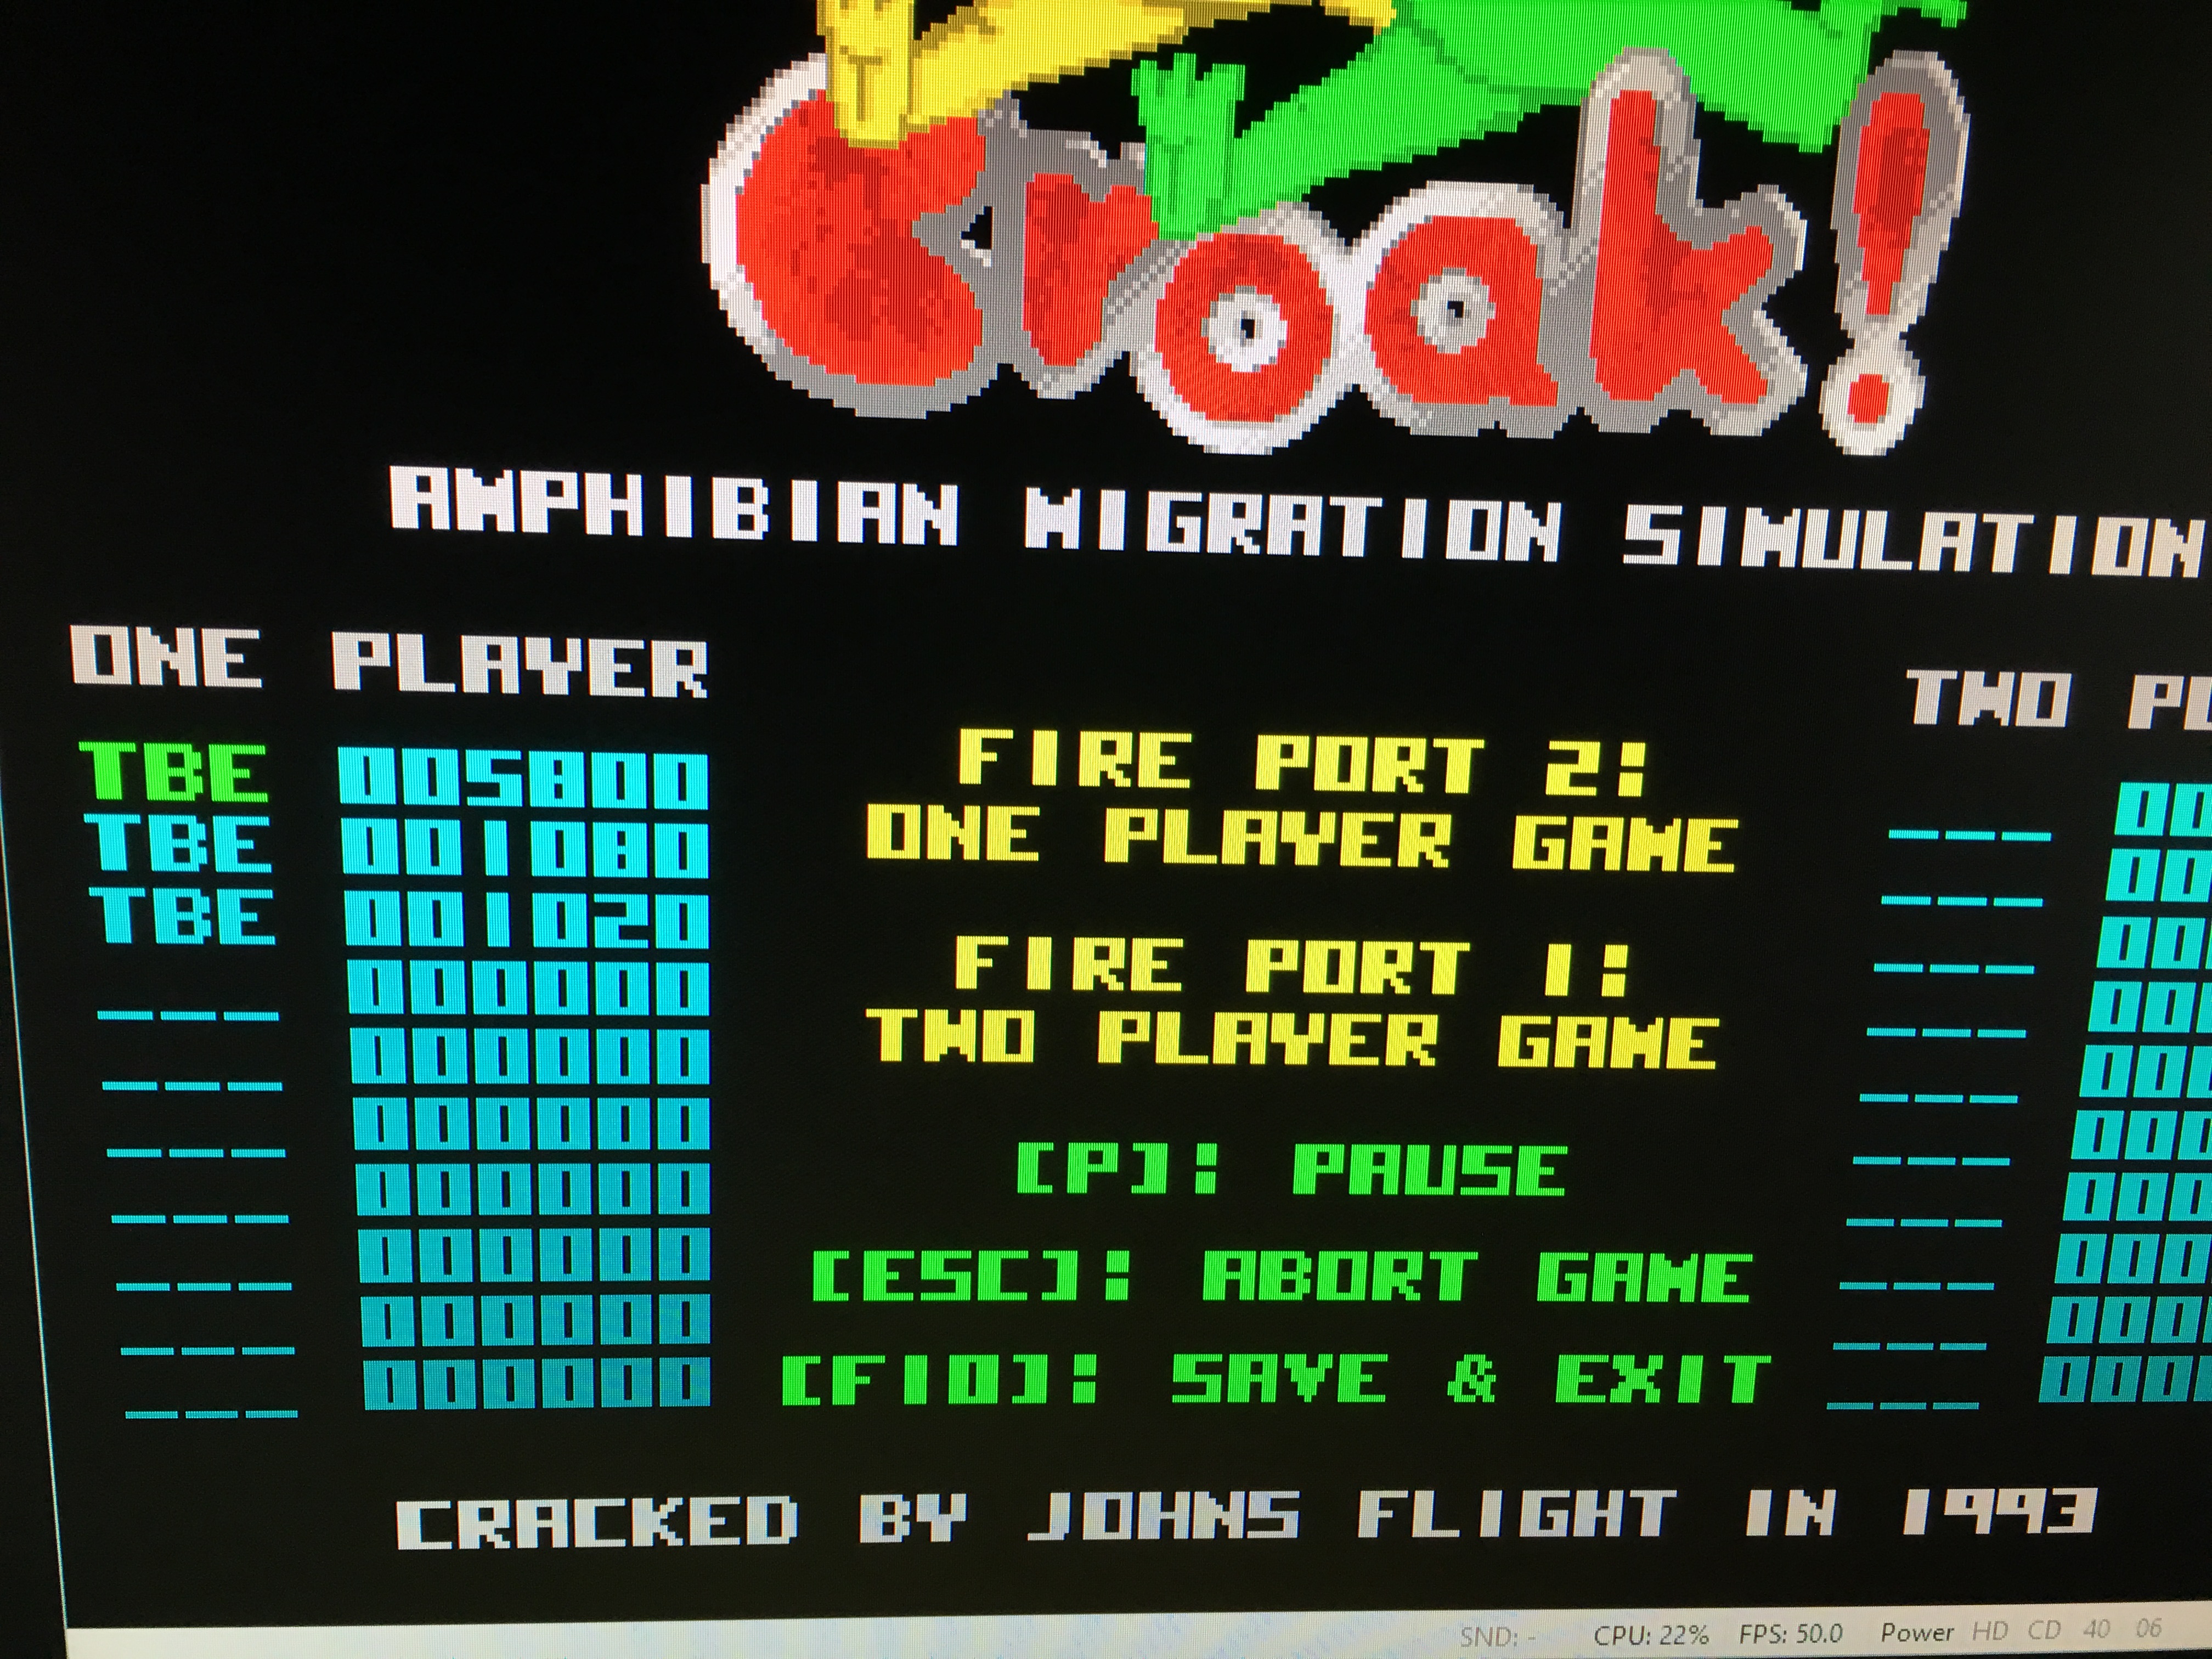 Sixx: Croak! Amphibian Migration Simulation (Amiga Emulated) 5,800 points on 2016-06-04 16:48:22